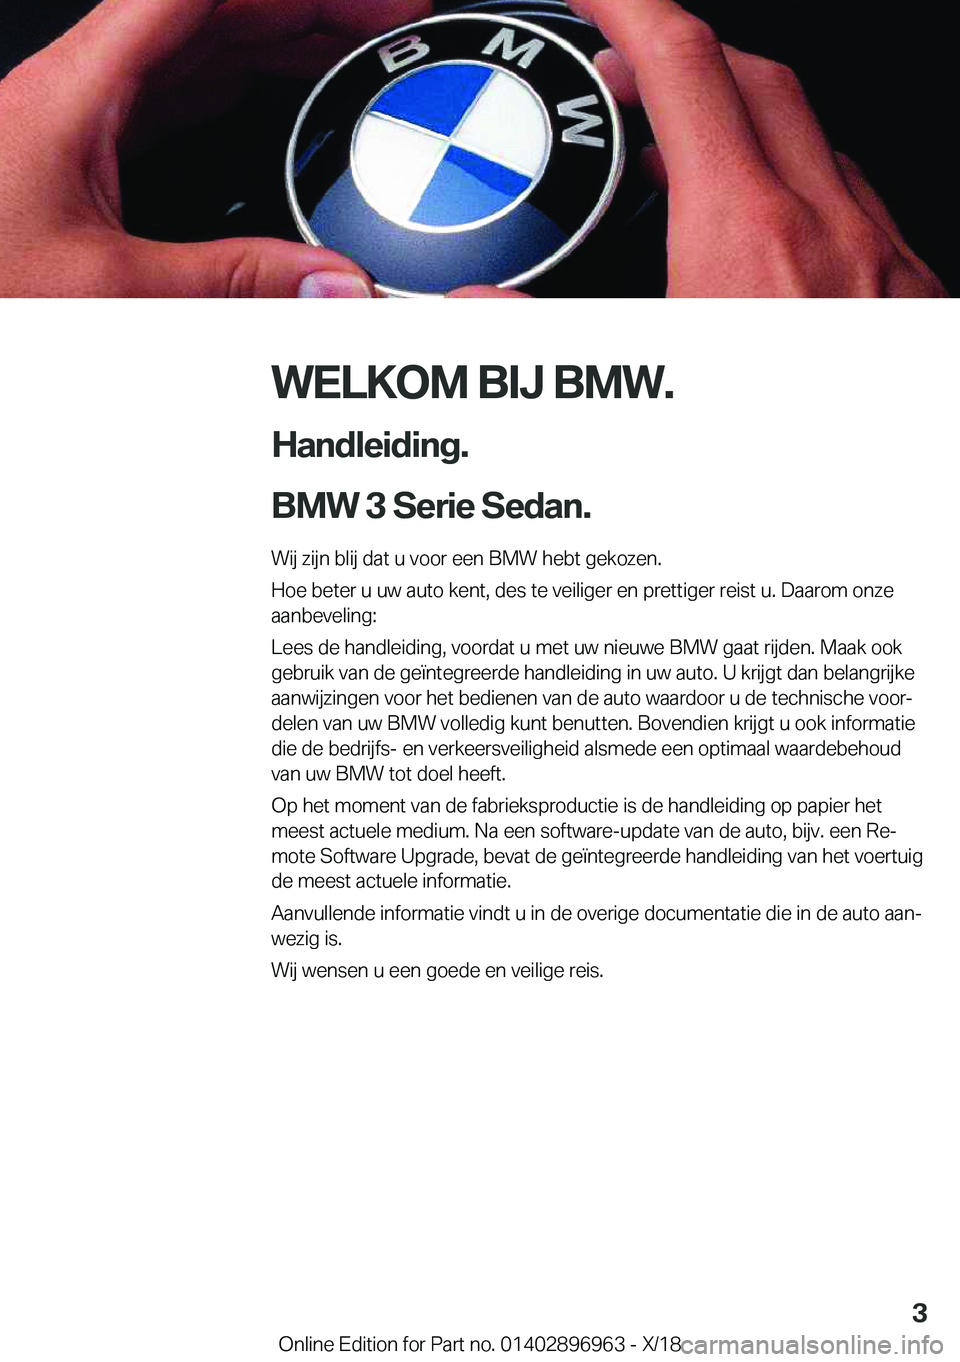 BMW 3 SERIES 2019  Instructieboekjes (in Dutch) �W�E�L�K�O�M��B�I�J��B�M�W�.
�H�a�n�d�l�e�i�d�i�n�g�.
�B�M�W��3��S�e�r�i�e��S�e�d�a�n�. �W�i�j��z�i�j�n��b�l�i�j��d�a�t��u��v�o�o�r��e�e�n��B�M�W��h�e�b�t��g�e�k�o�z�e�n�.
�H�o�e��b�e�t